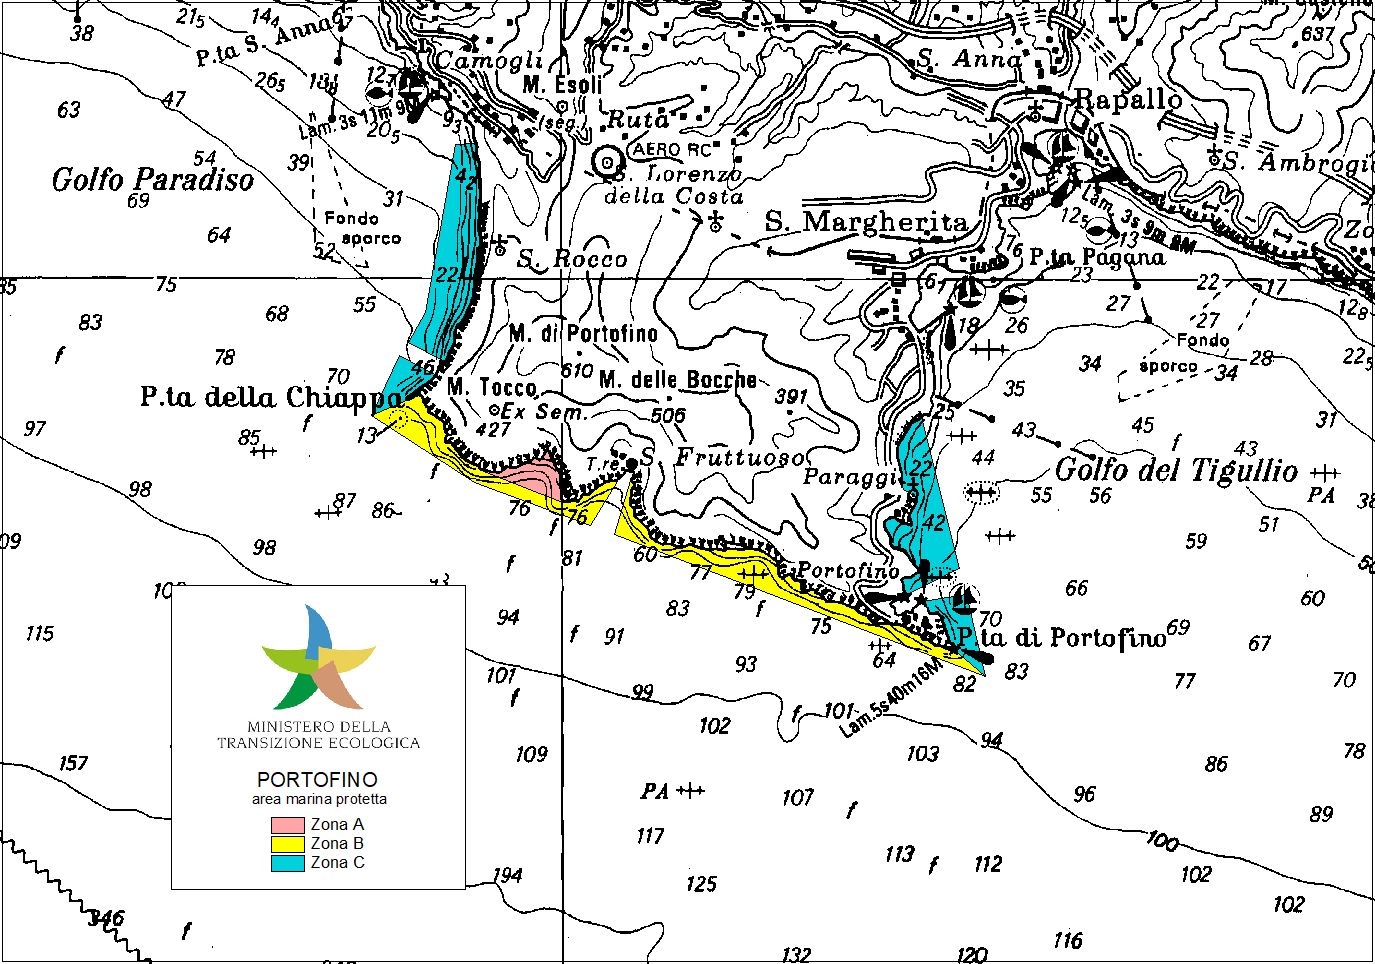 Area marina protetta - Portofino